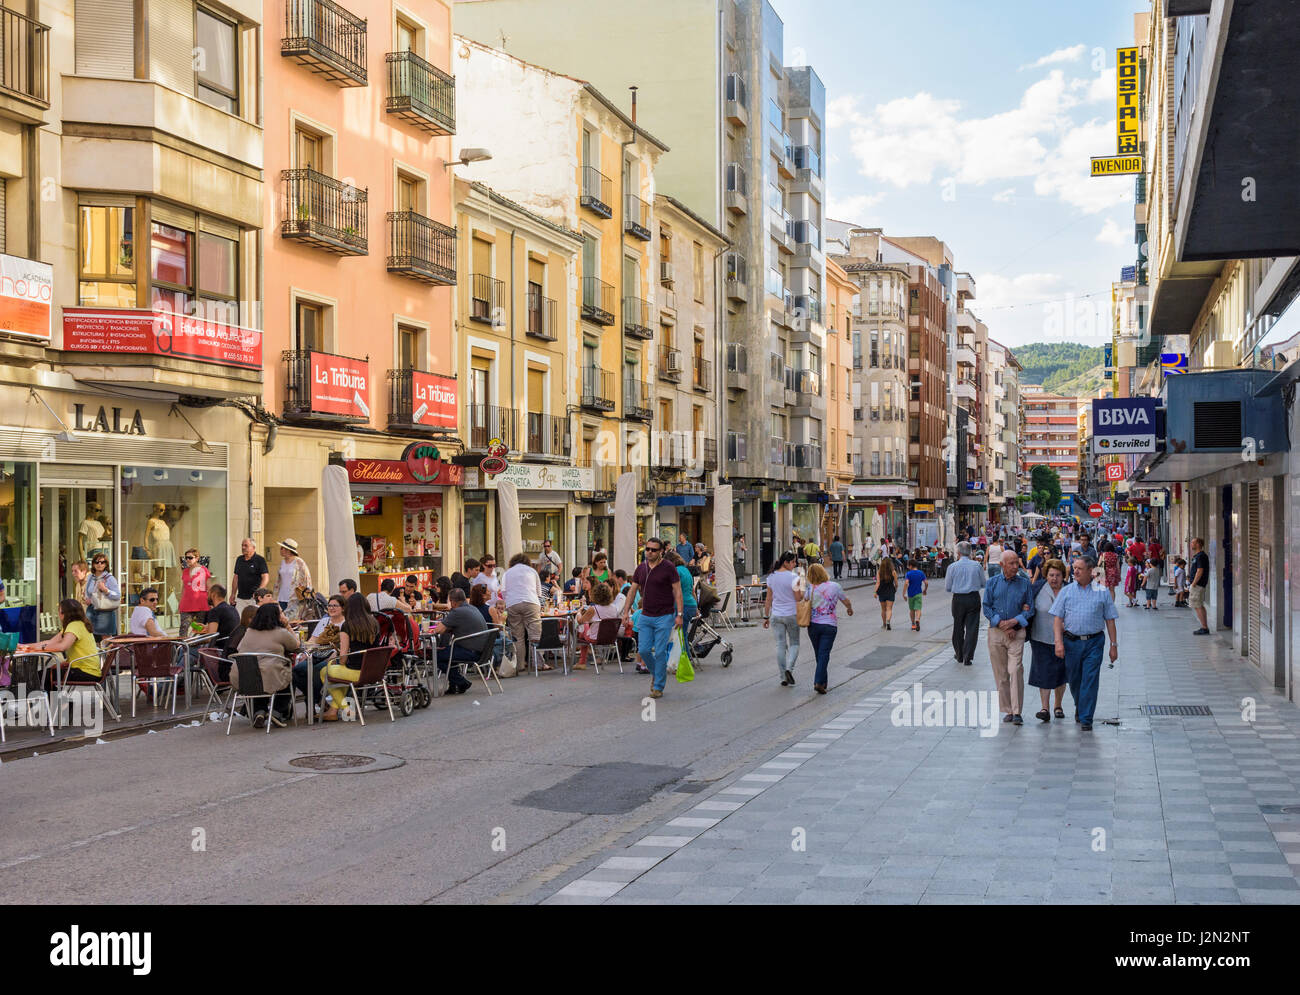 La gente disfruta de su paseo nocturno y sentados en cafés a lo largo de la  principal calle comercial de Cuenca, Calle Carreteria en la nueva ciudad,  Cuenca, España Fotografía de stock -